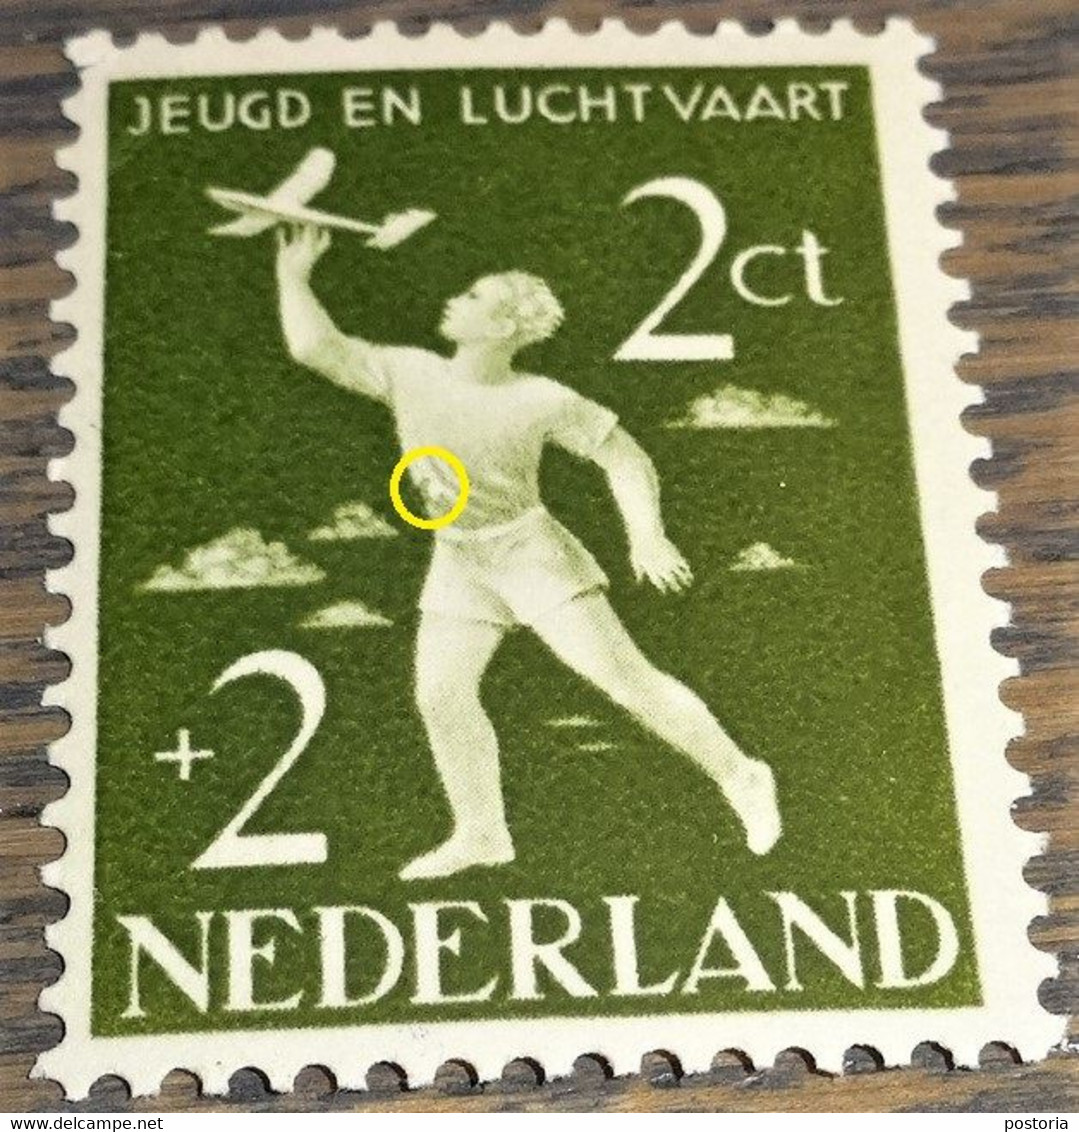 Nederland - MAST - 647 PM - 1954 - Plaatfout - Postfris - Olijfgroen Vlekje Rand Van T-shirt - Abarten Und Kuriositäten